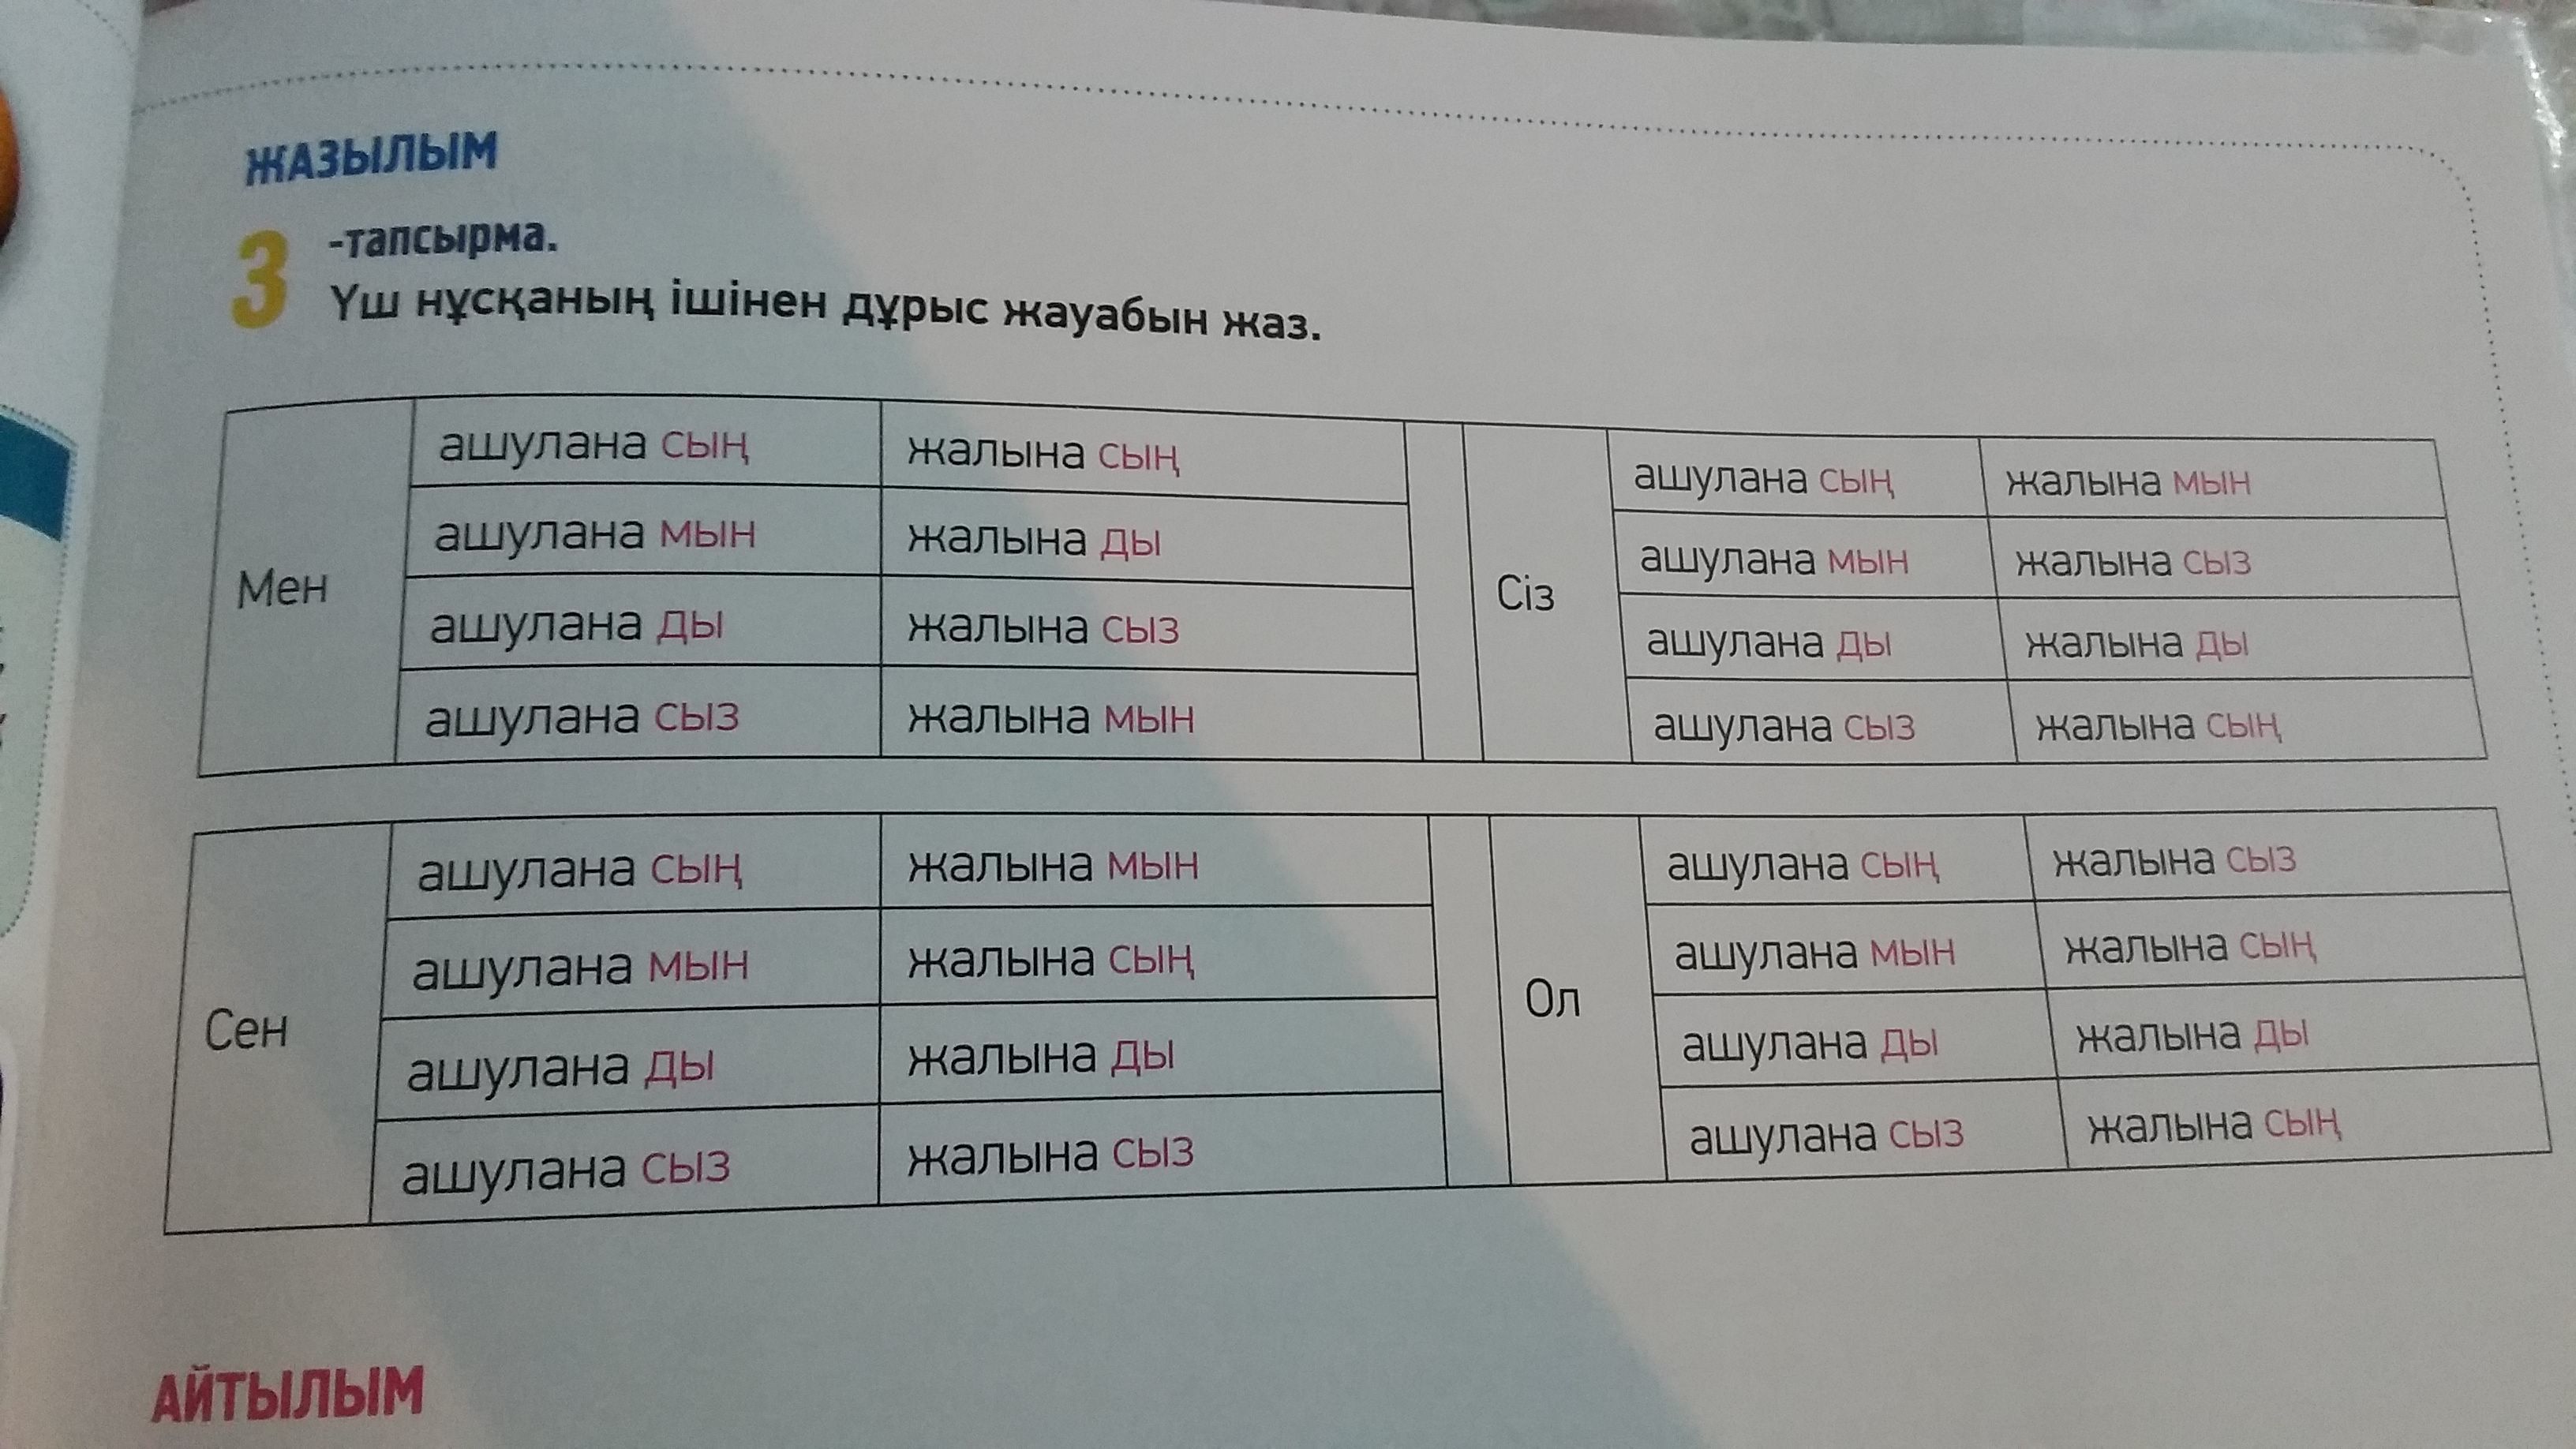 члены перевод на казахский язык фото 43